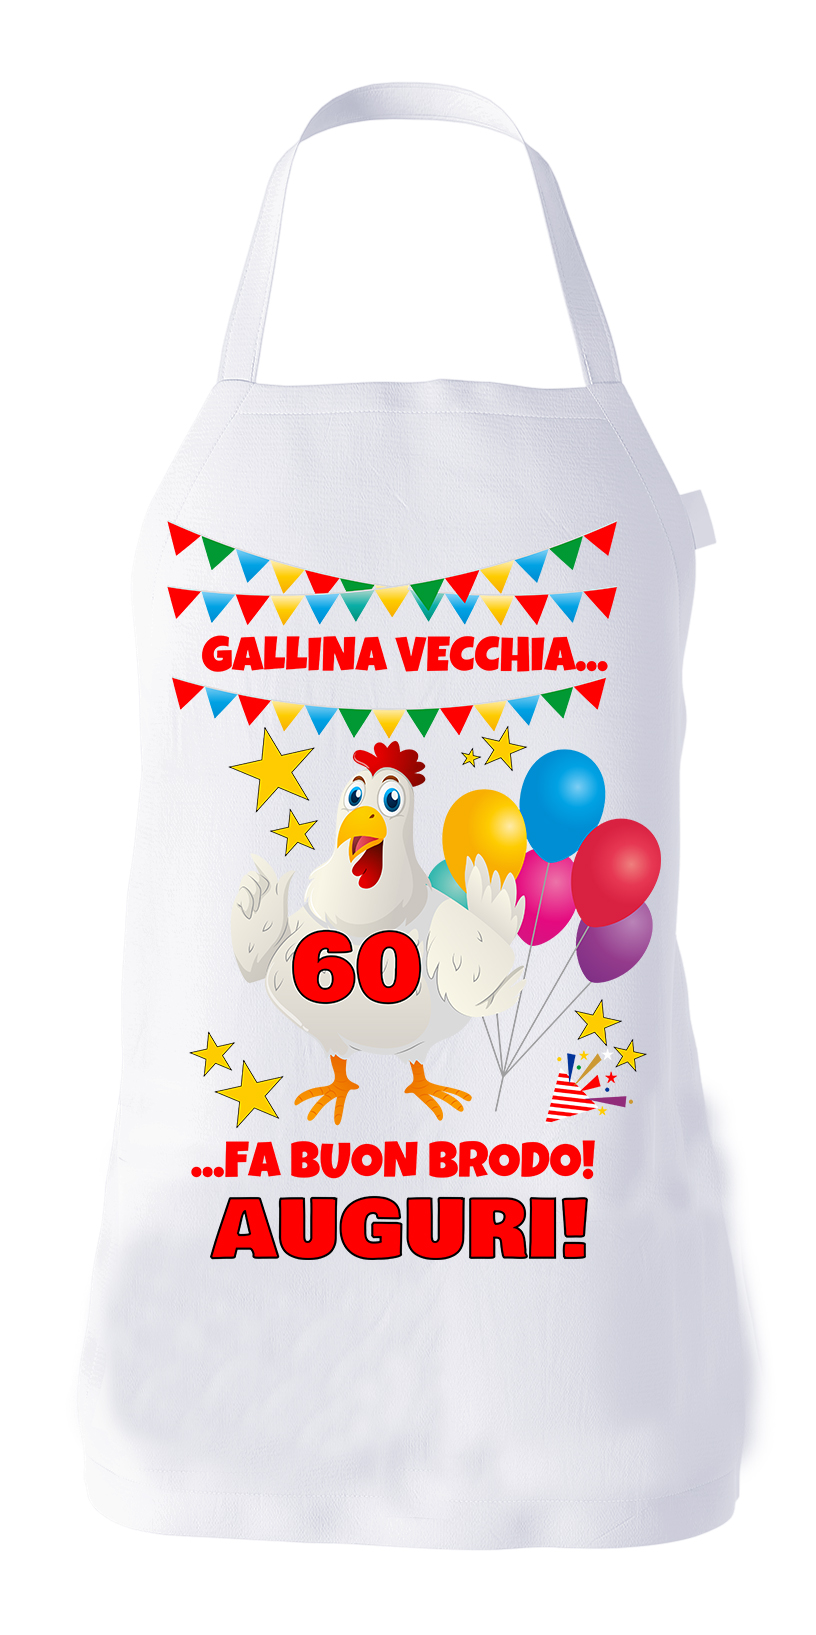 Grembiule Compleanno 60 anni divertente cucina barbecue Gallina vecchia fa  buon brodo! Auguri! - ColorFamily